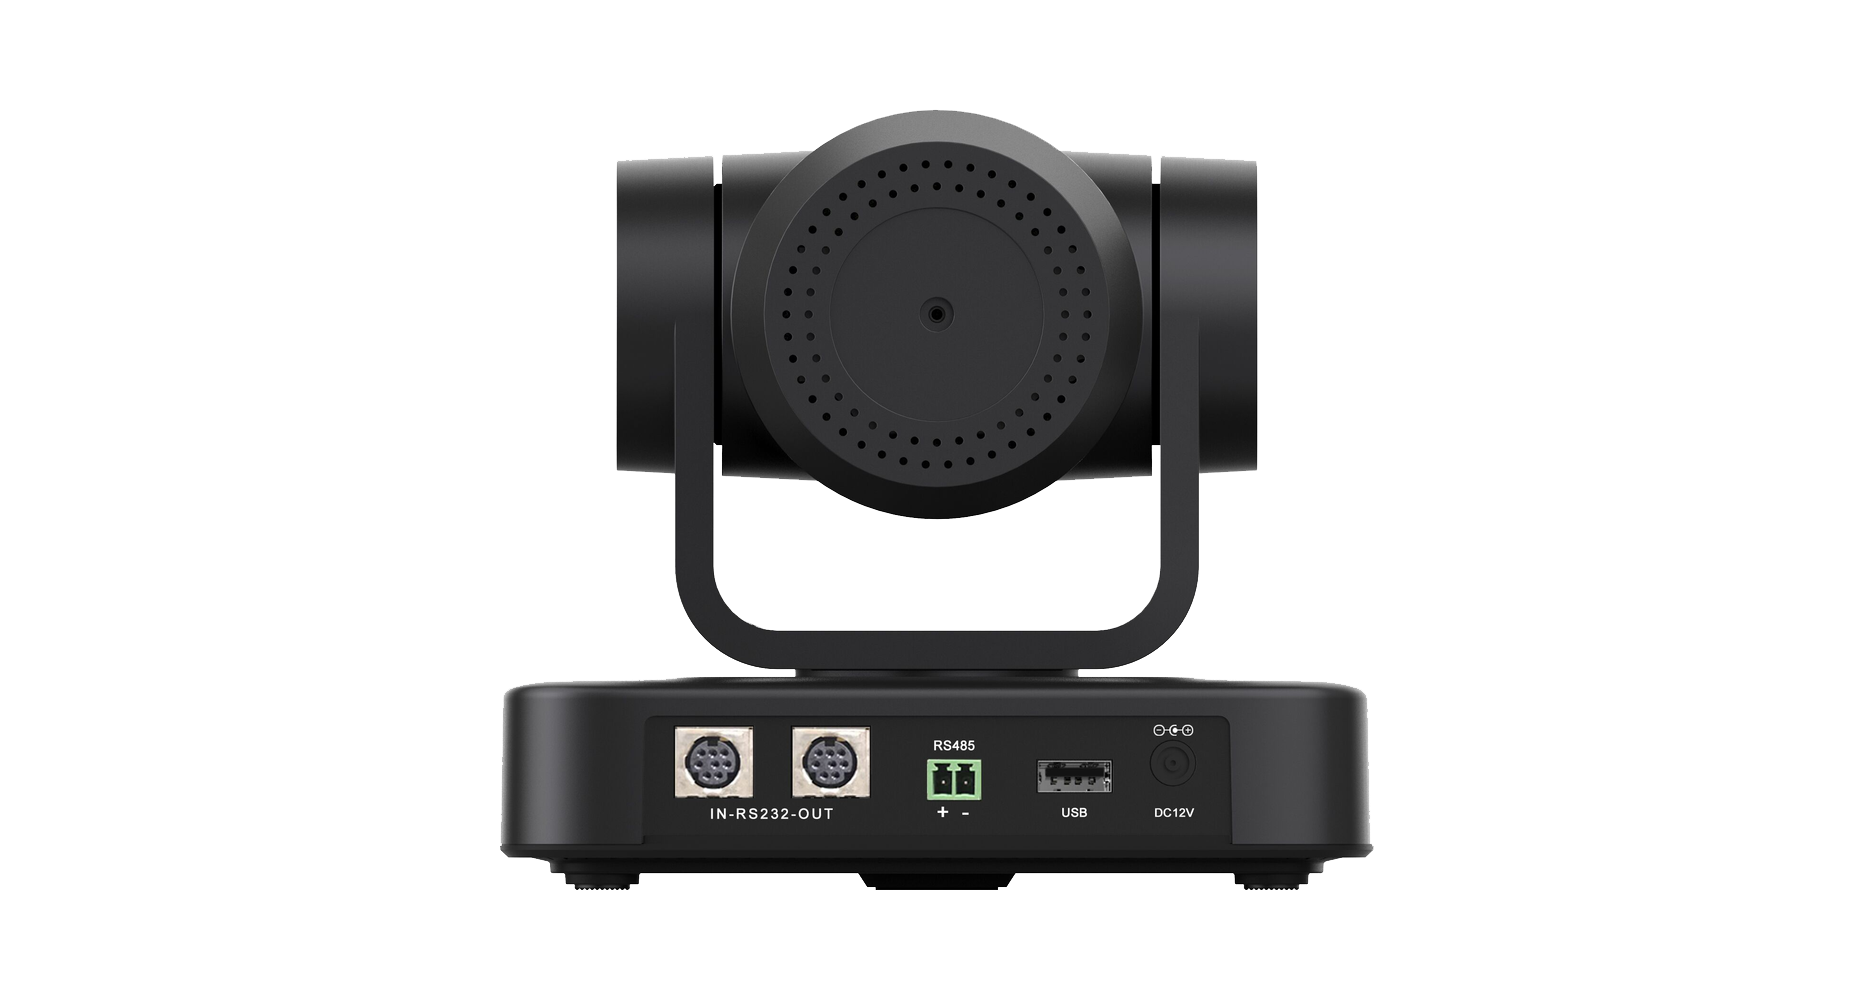 Камера для видеоконференцсвязи Prestel HD-PTZ703U2 вид сзади